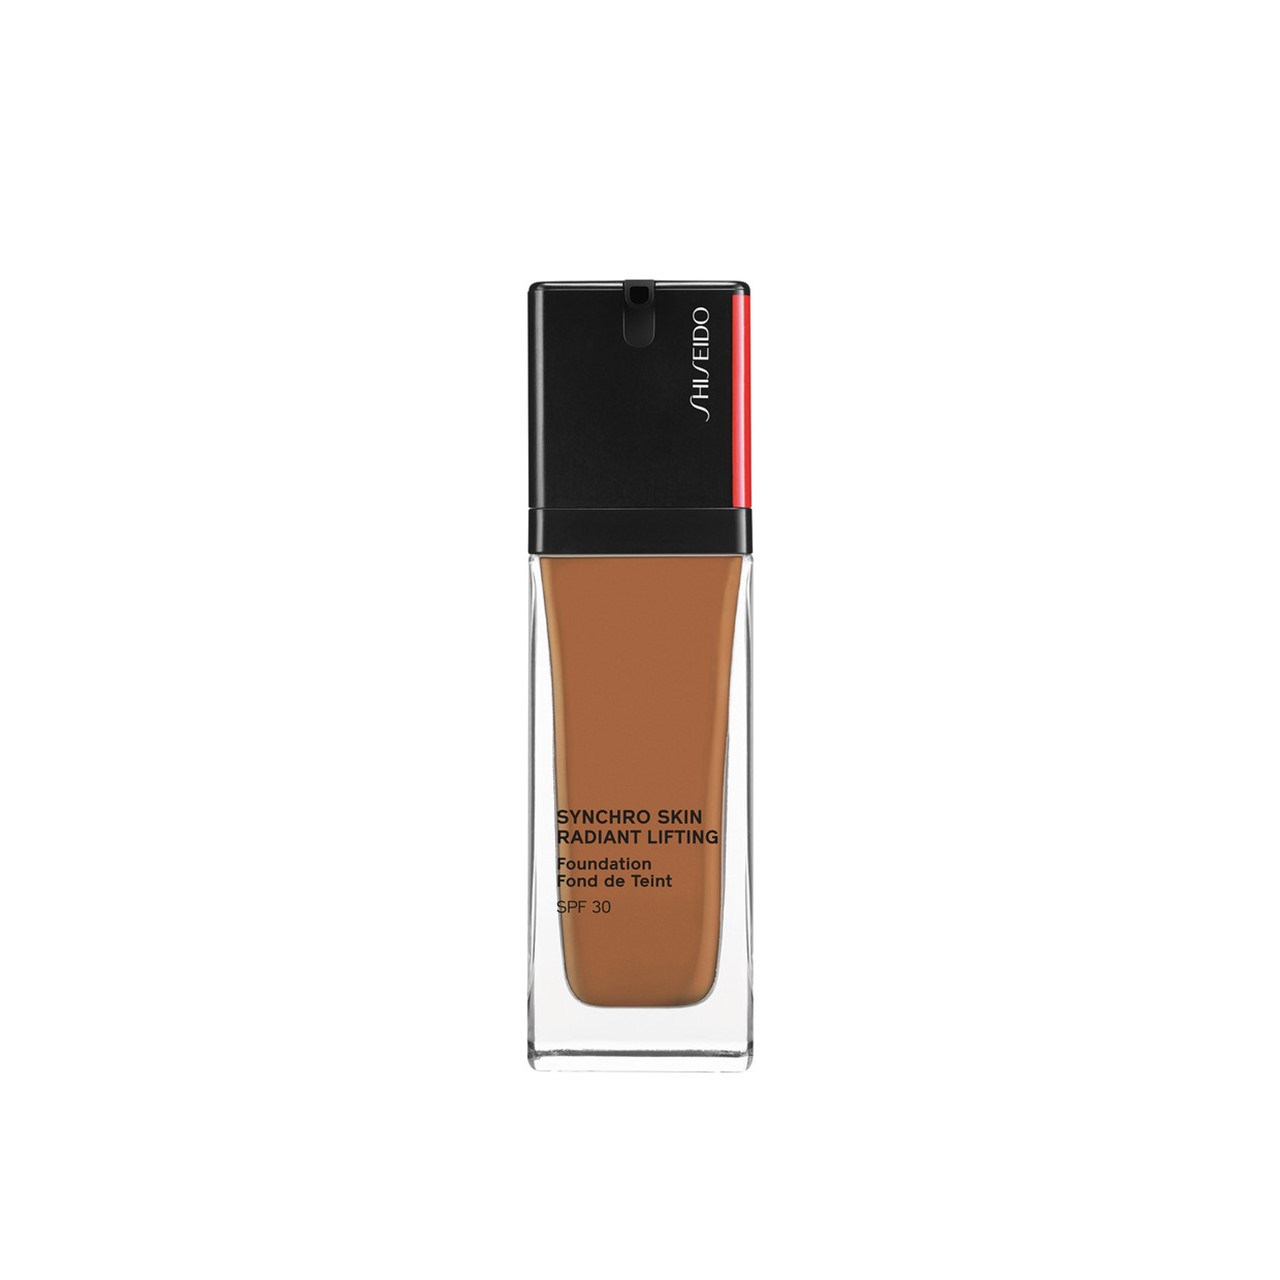 Shiseido Synchro Skin Radiant Lifting Foundation SPF30 460 Topaz 30ml